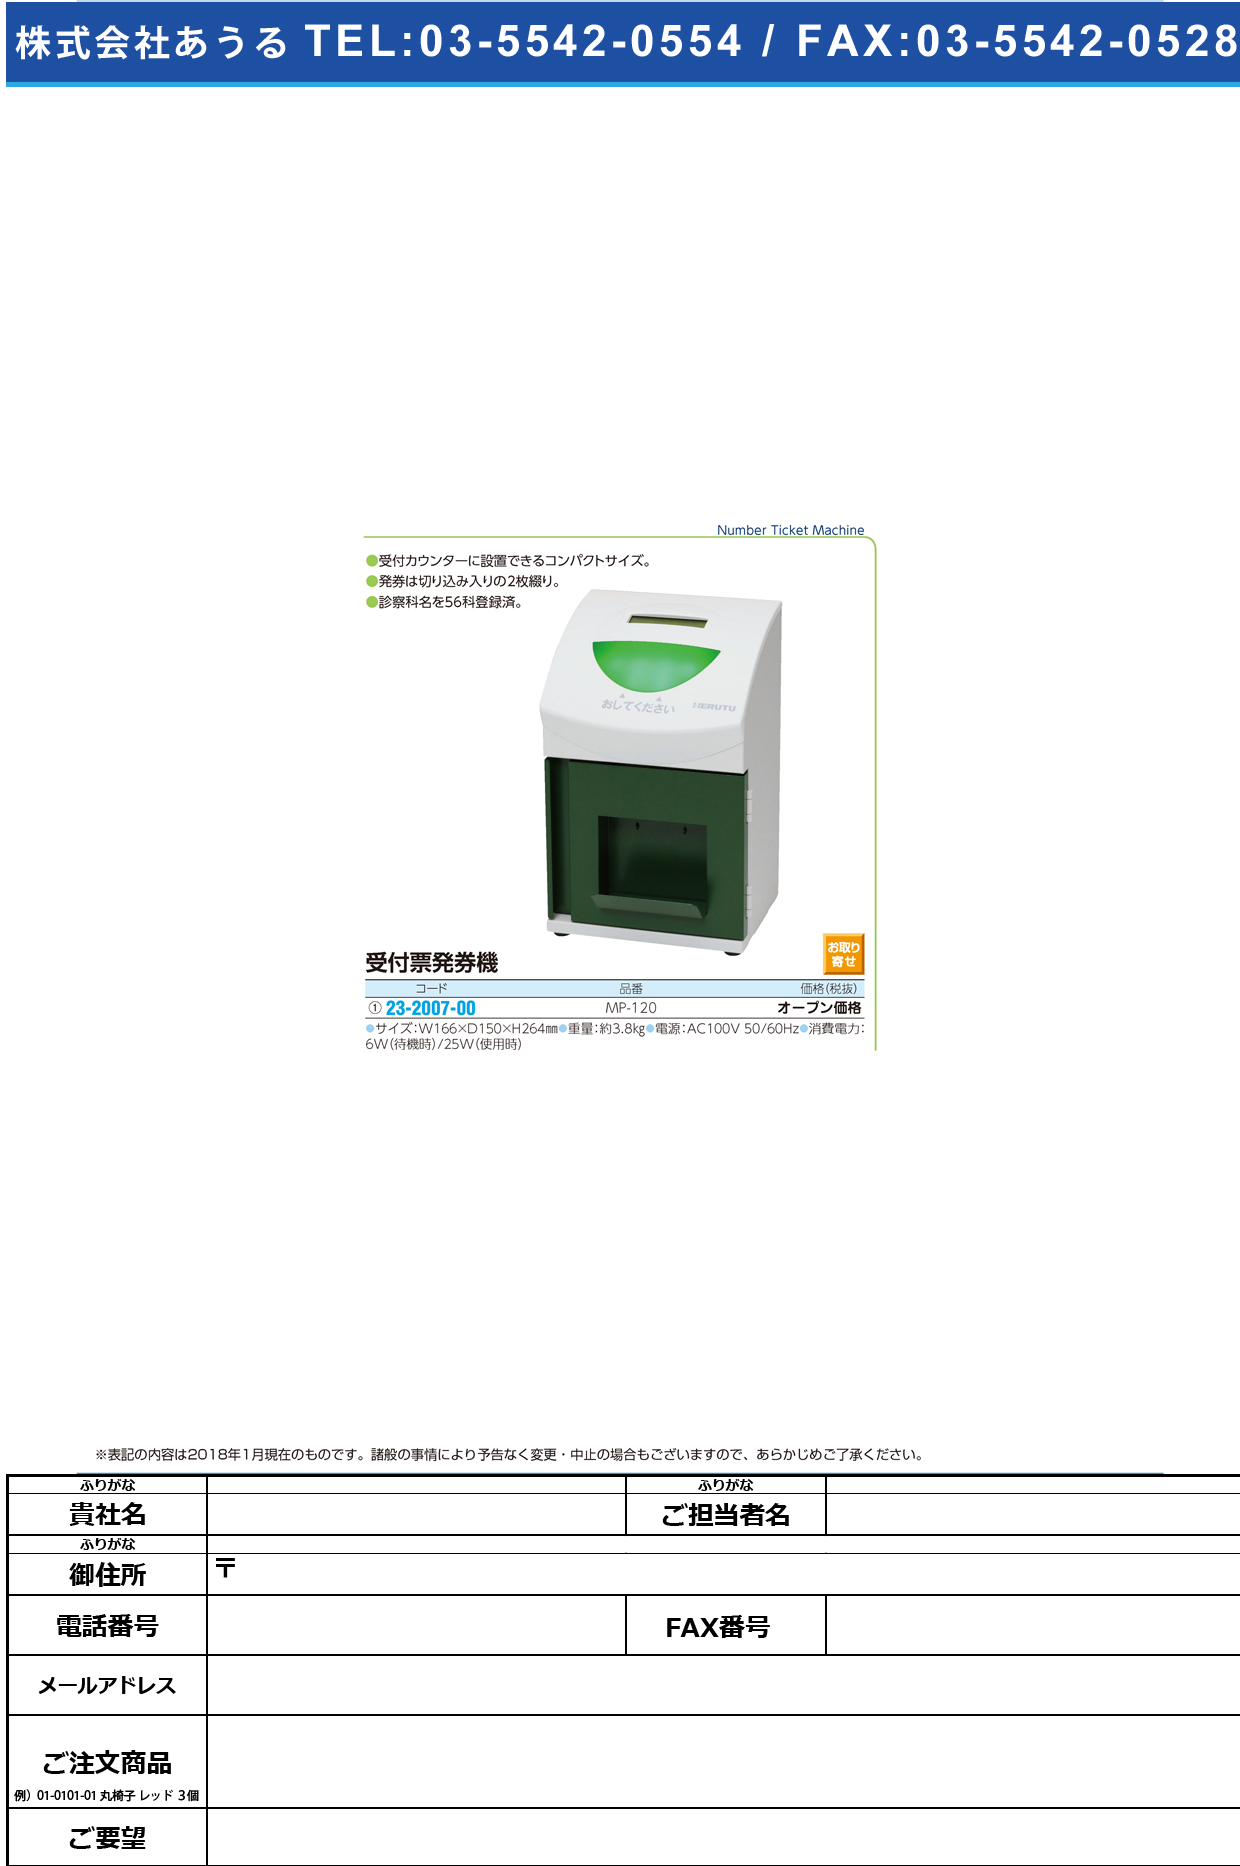 (23-2007-00)受付票発券機 MP-120 ｳｹﾂｹﾋｮｳﾊｯｹﾝｷ【1台単位】【2019年カタログ商品】